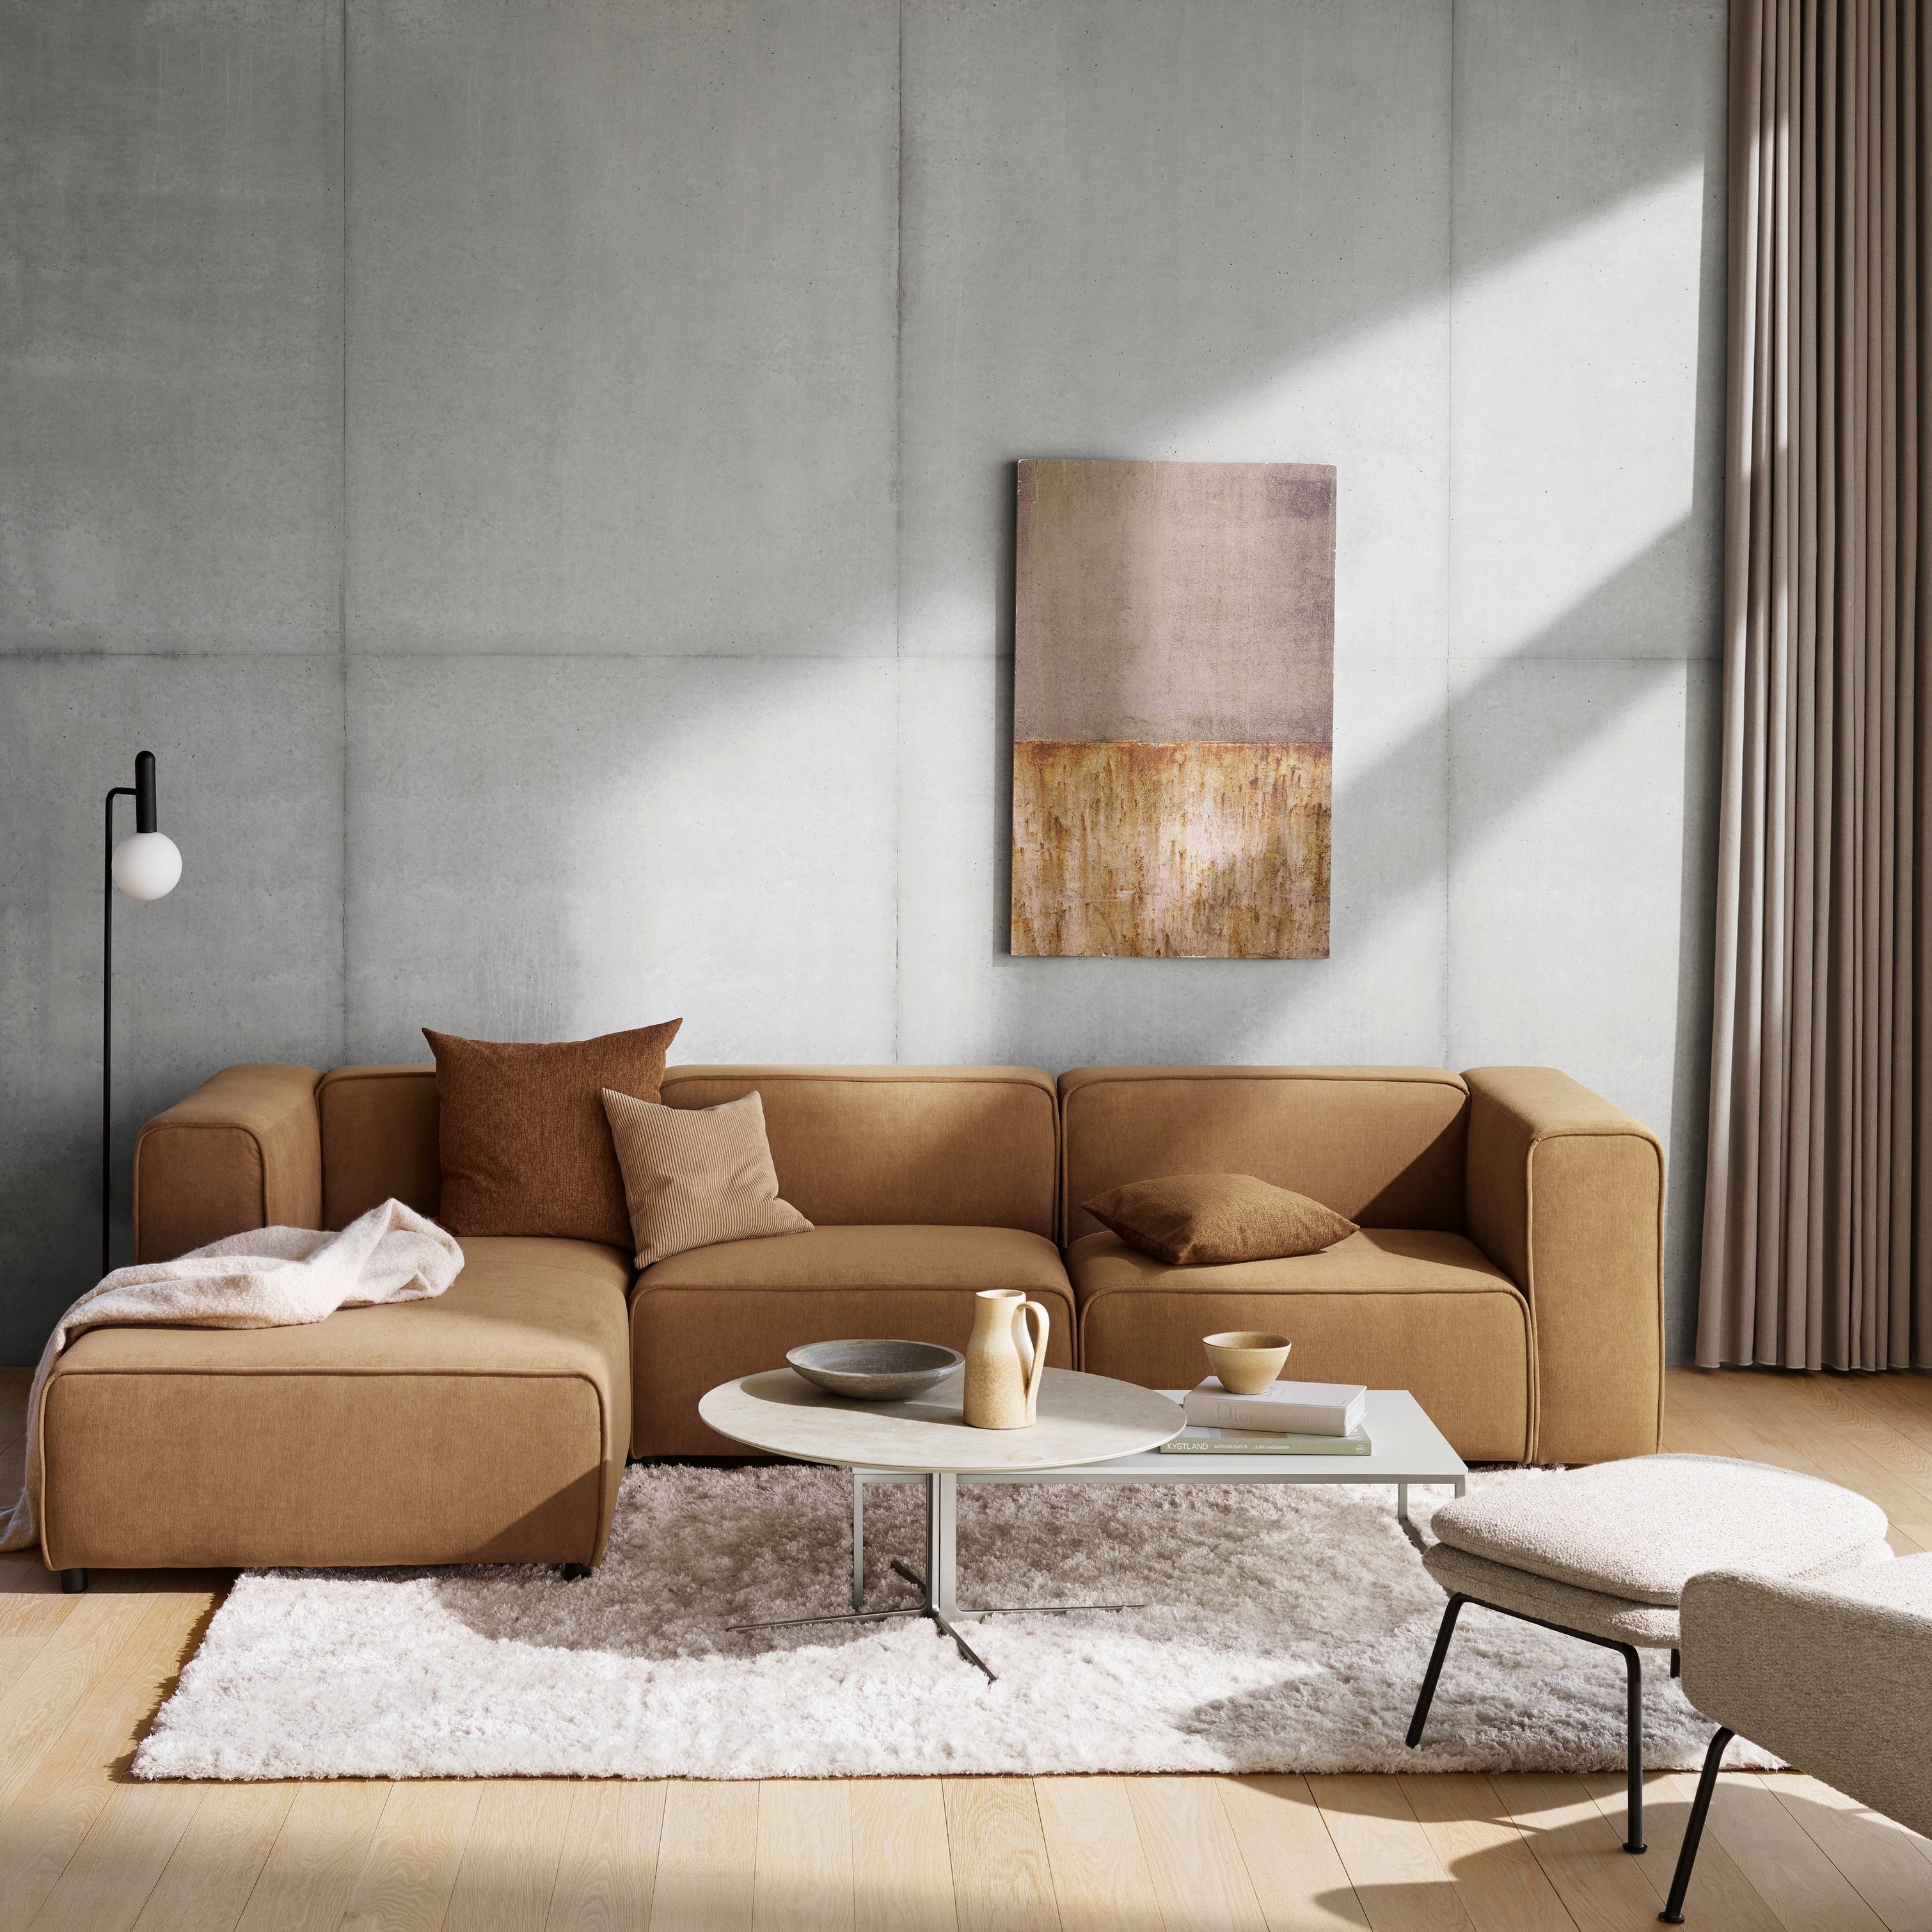 Sala moderna con sofá seccional beige, arte mural abstracto y alfombra peluda sobre suelo de madera.